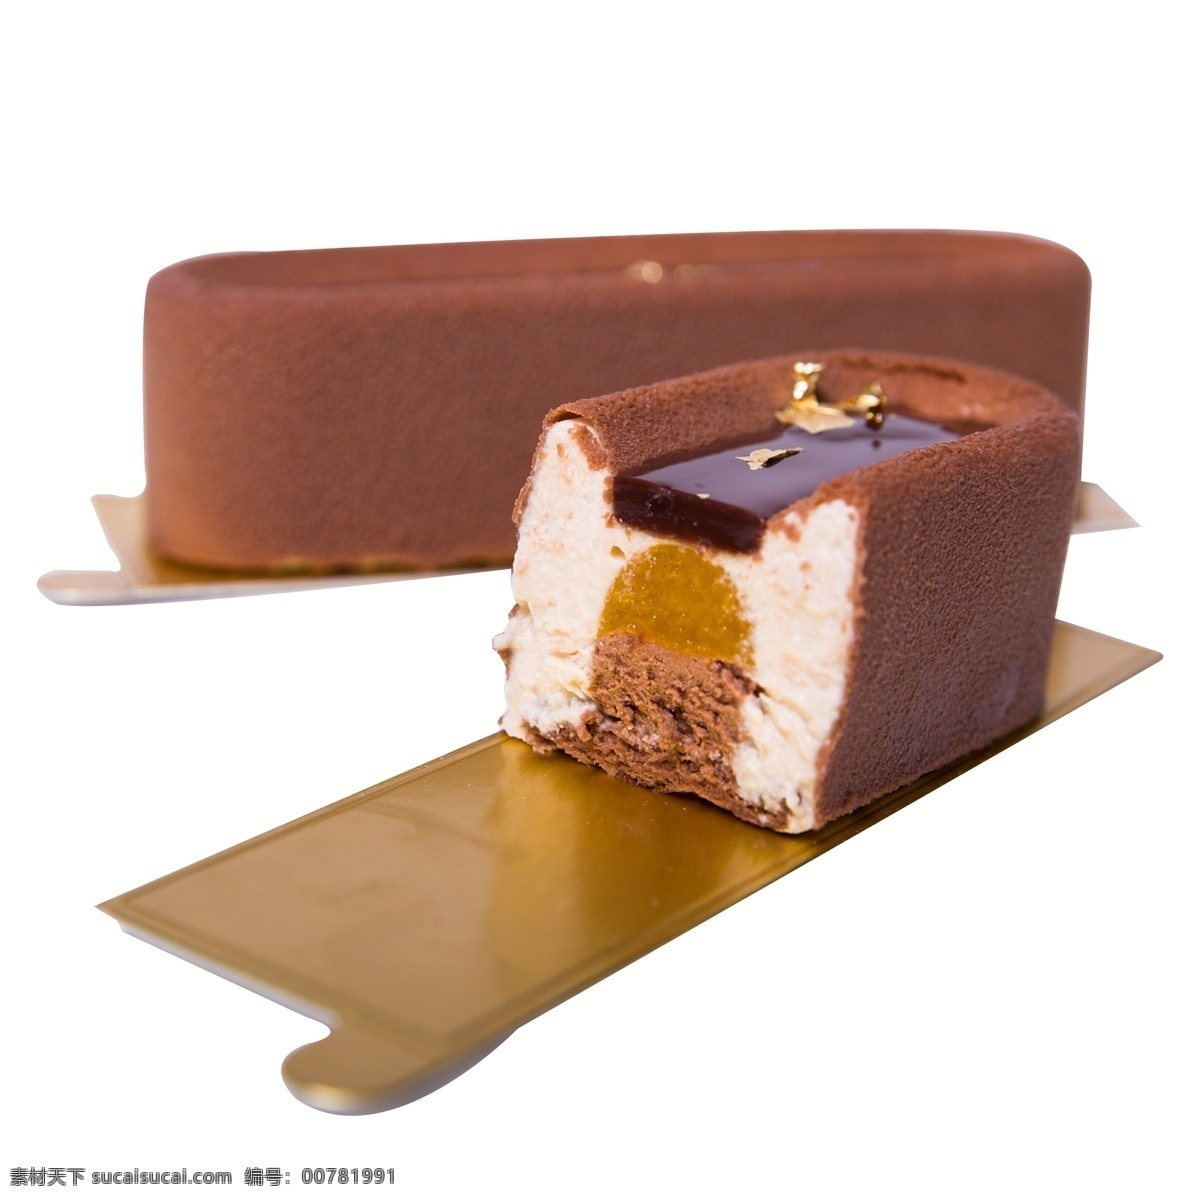 方块 巧克力 夹心 甜品 近景 实拍 图 方块巧克力 巧克力点心 点心 甜点 美食 法式甜品 朱古力 两个 两个巧克力